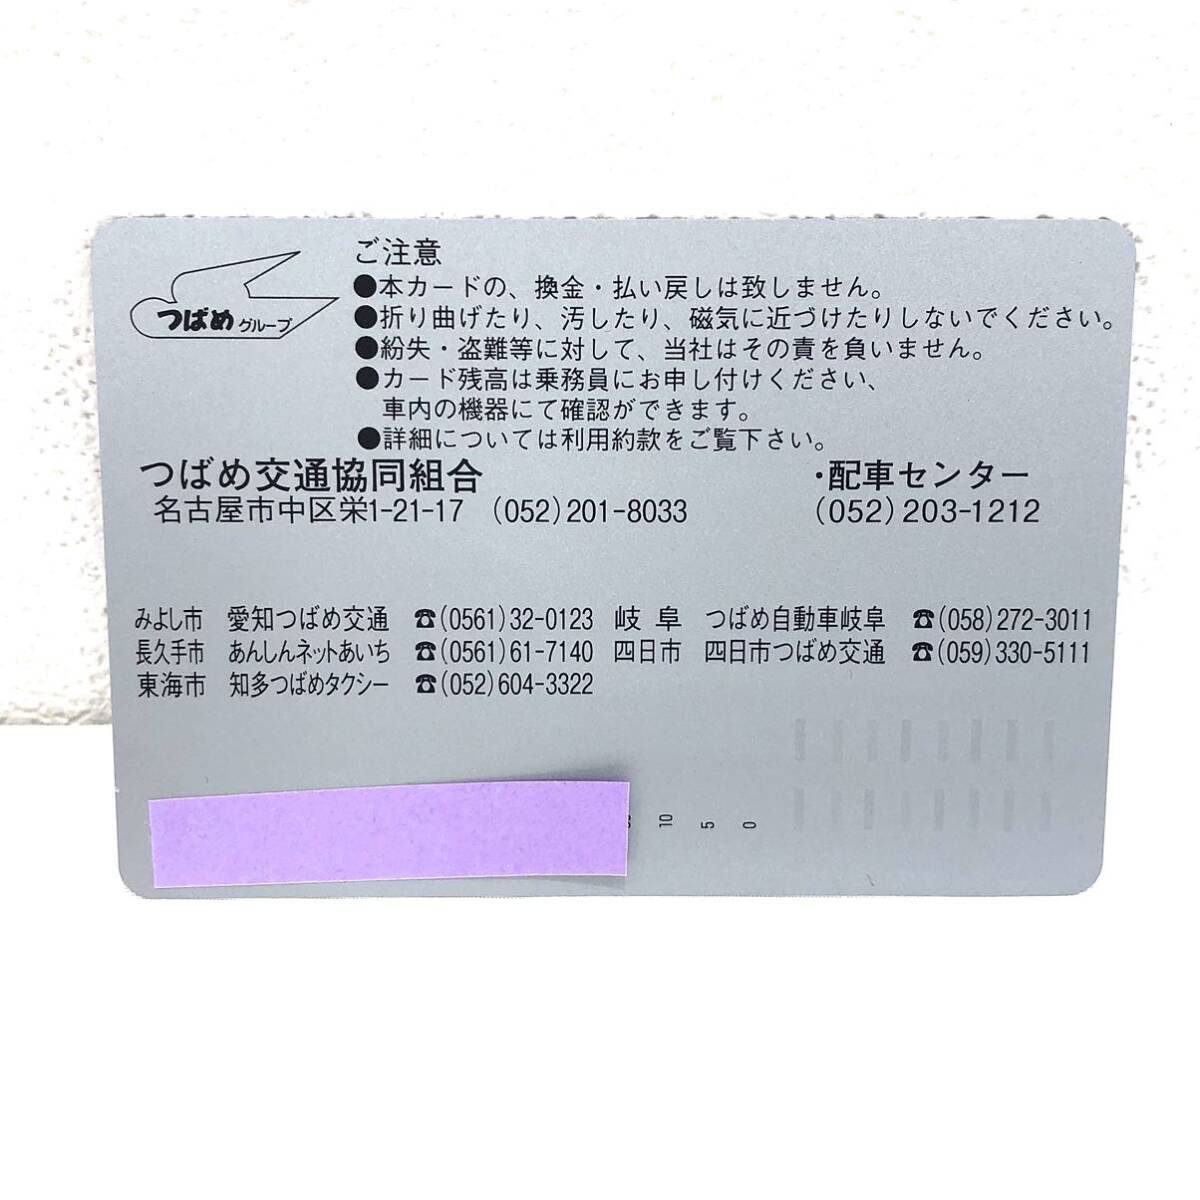 （M3582他)【未使用】 つばめタクシー プリペイドカード スマタク 額面15750円 の画像3